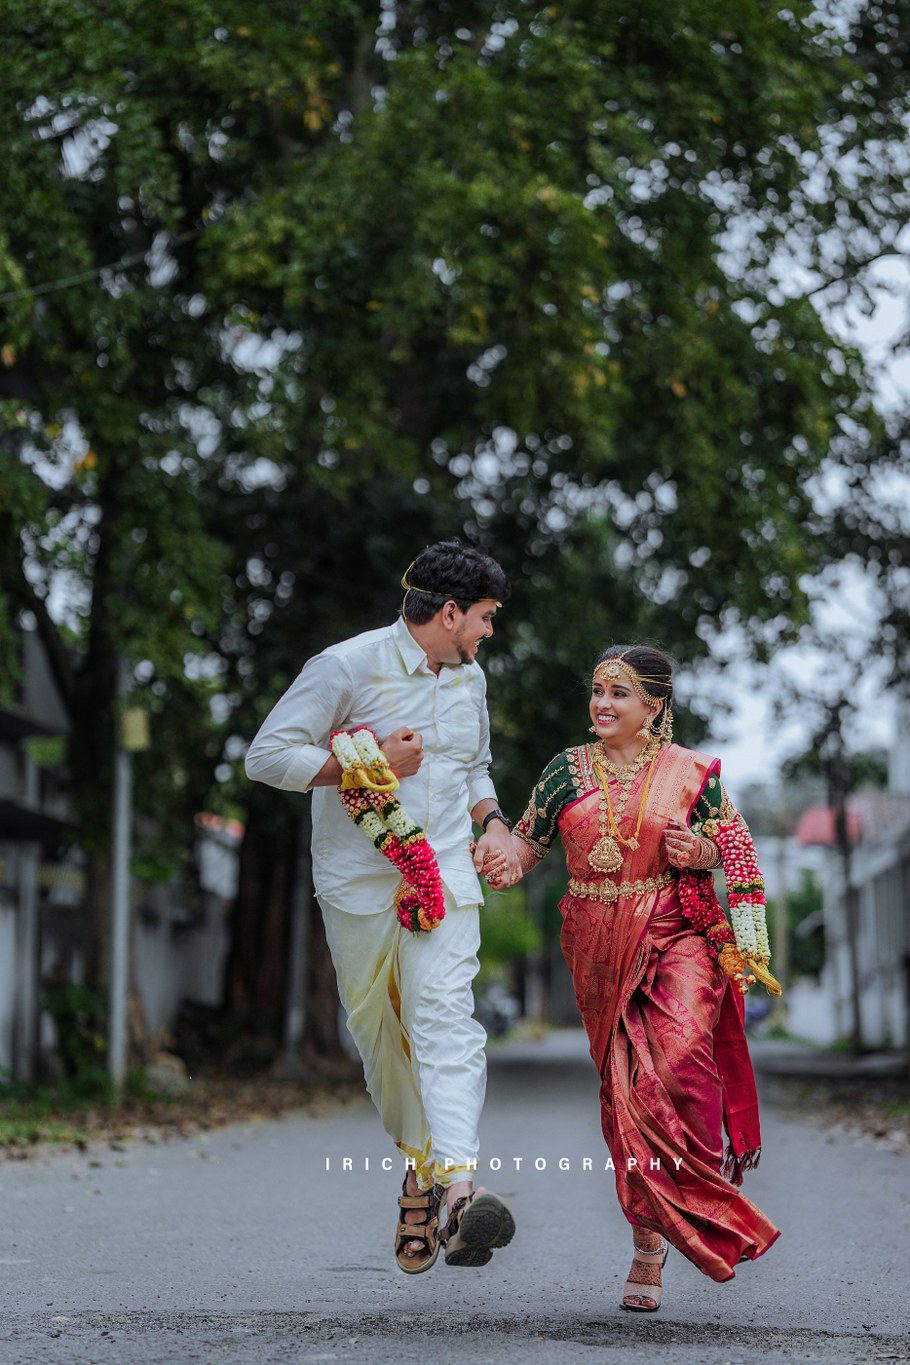 Photo of wine and gold bridal lehenga | Indian wedding photography couples,  Indian wedding couple photography, Bride photoshoot